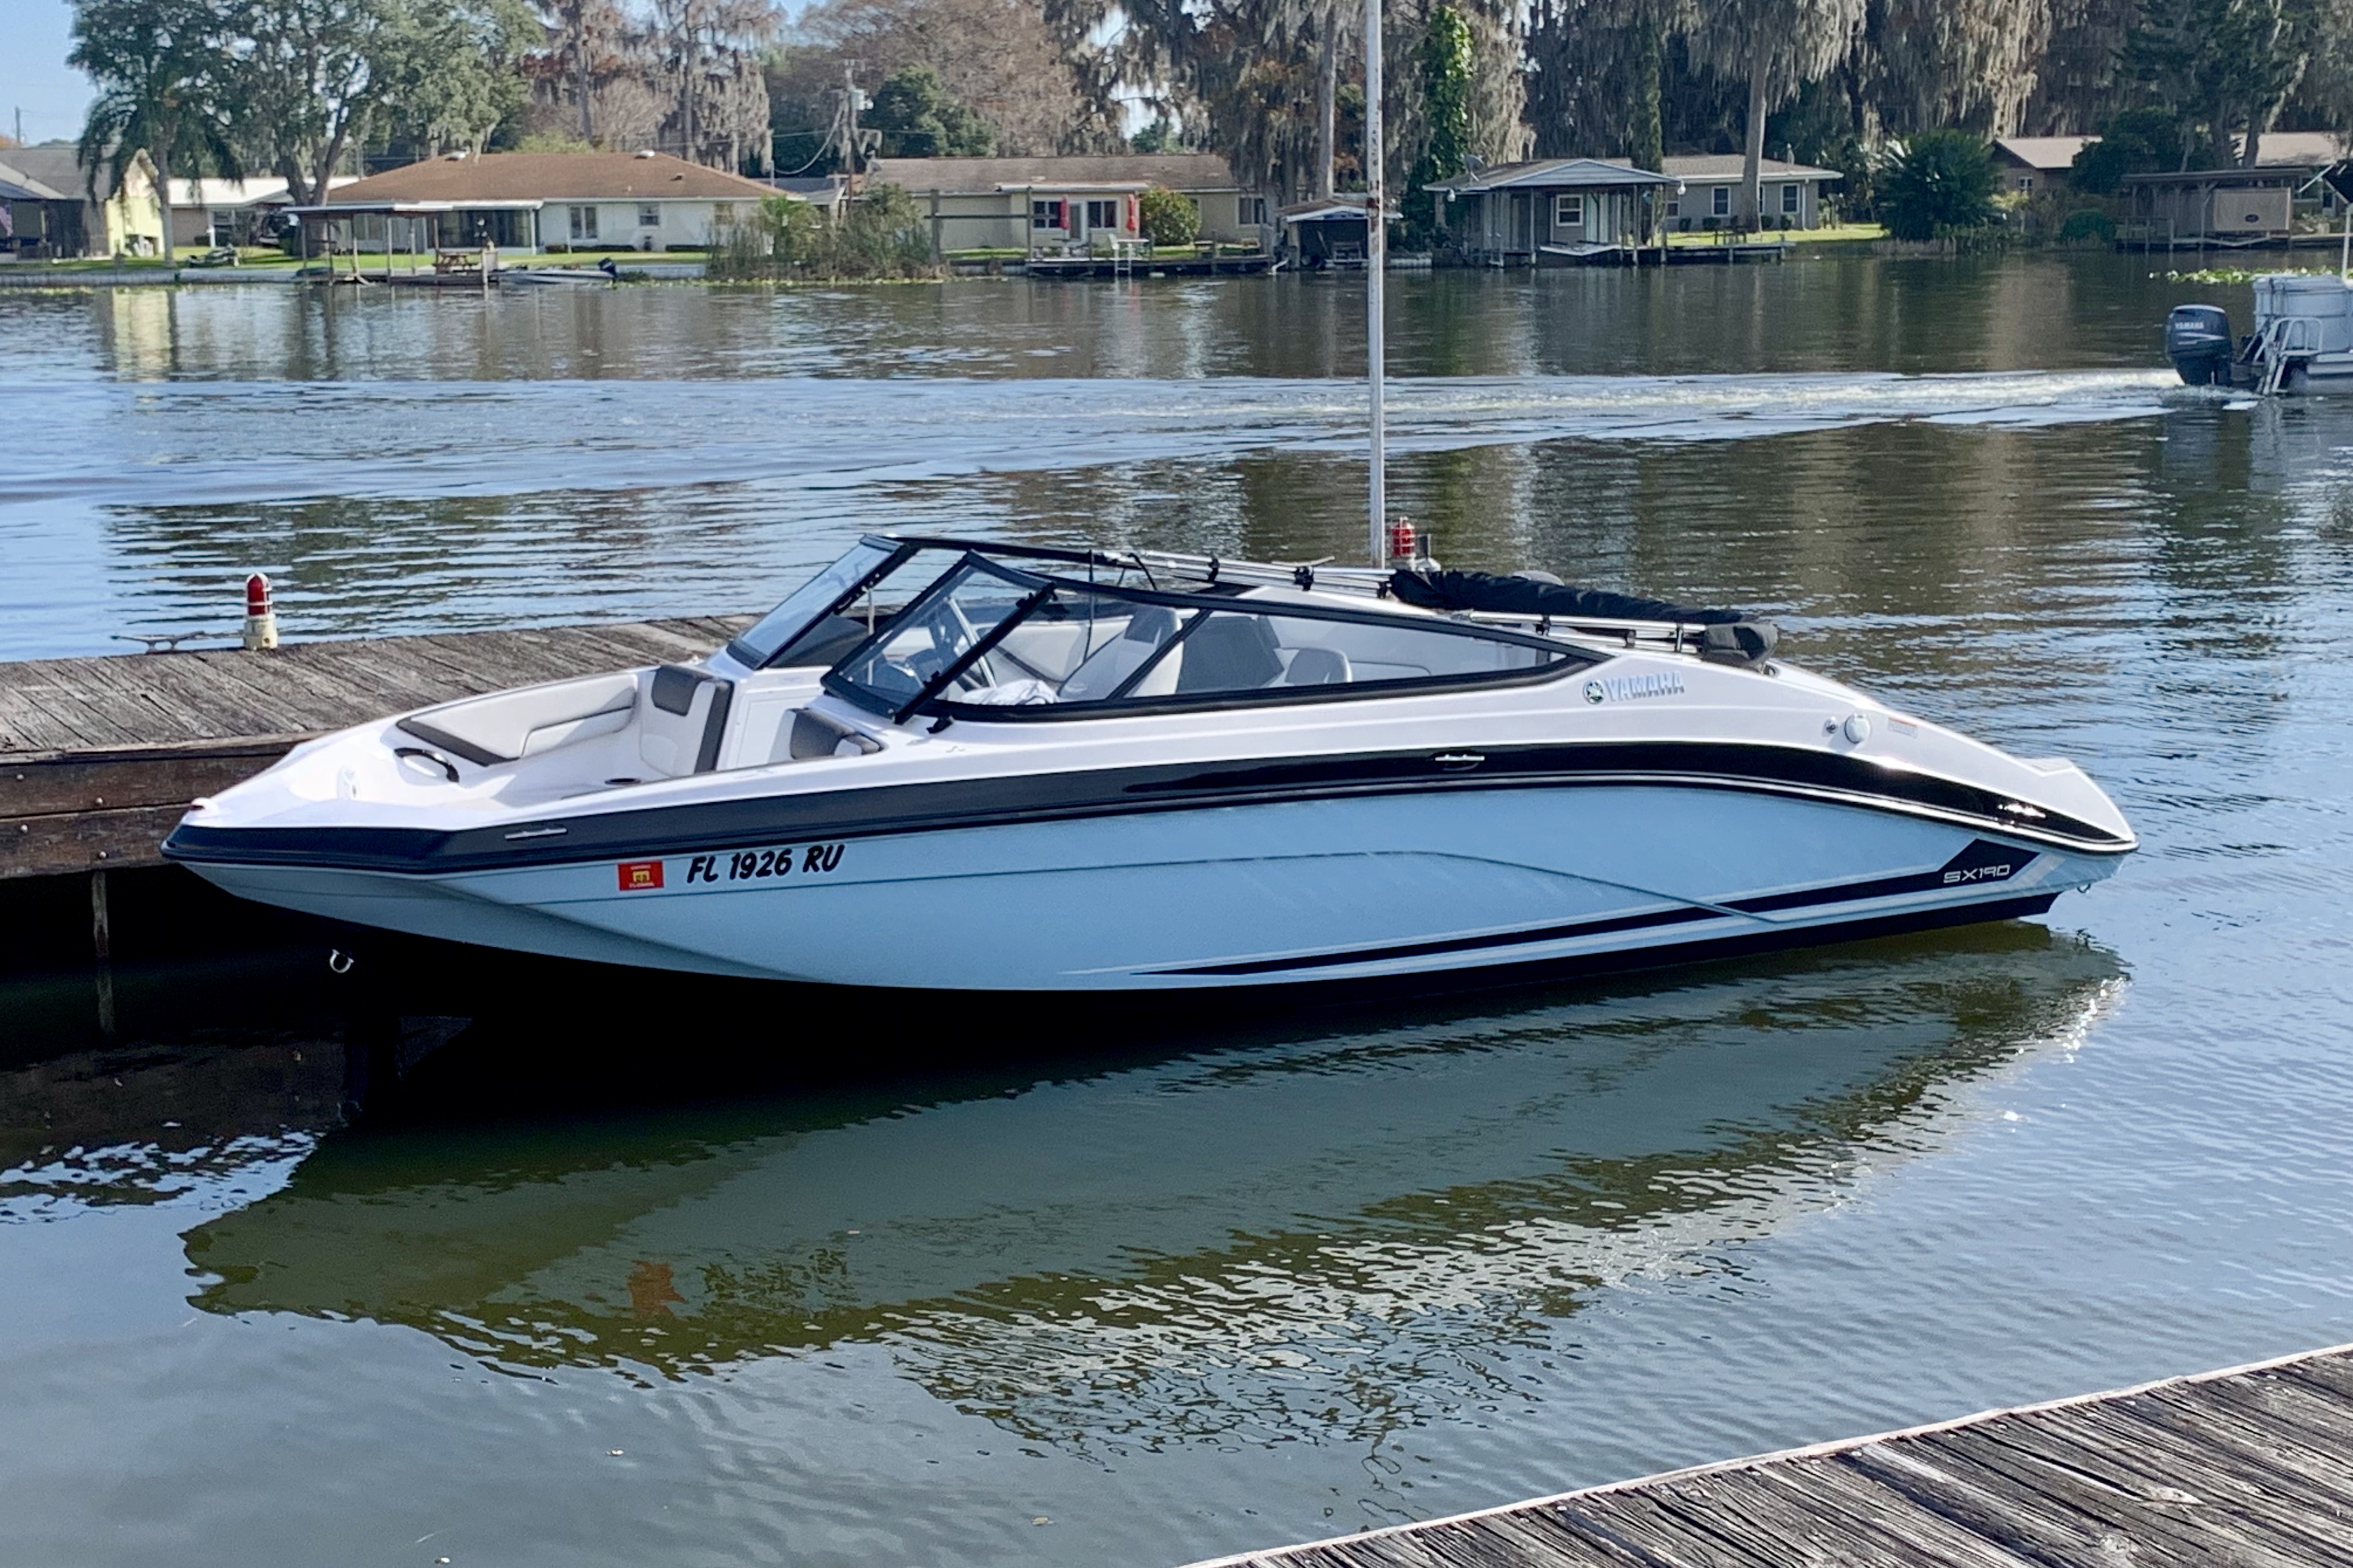 2019 SX190 on Harris Lake in Florida